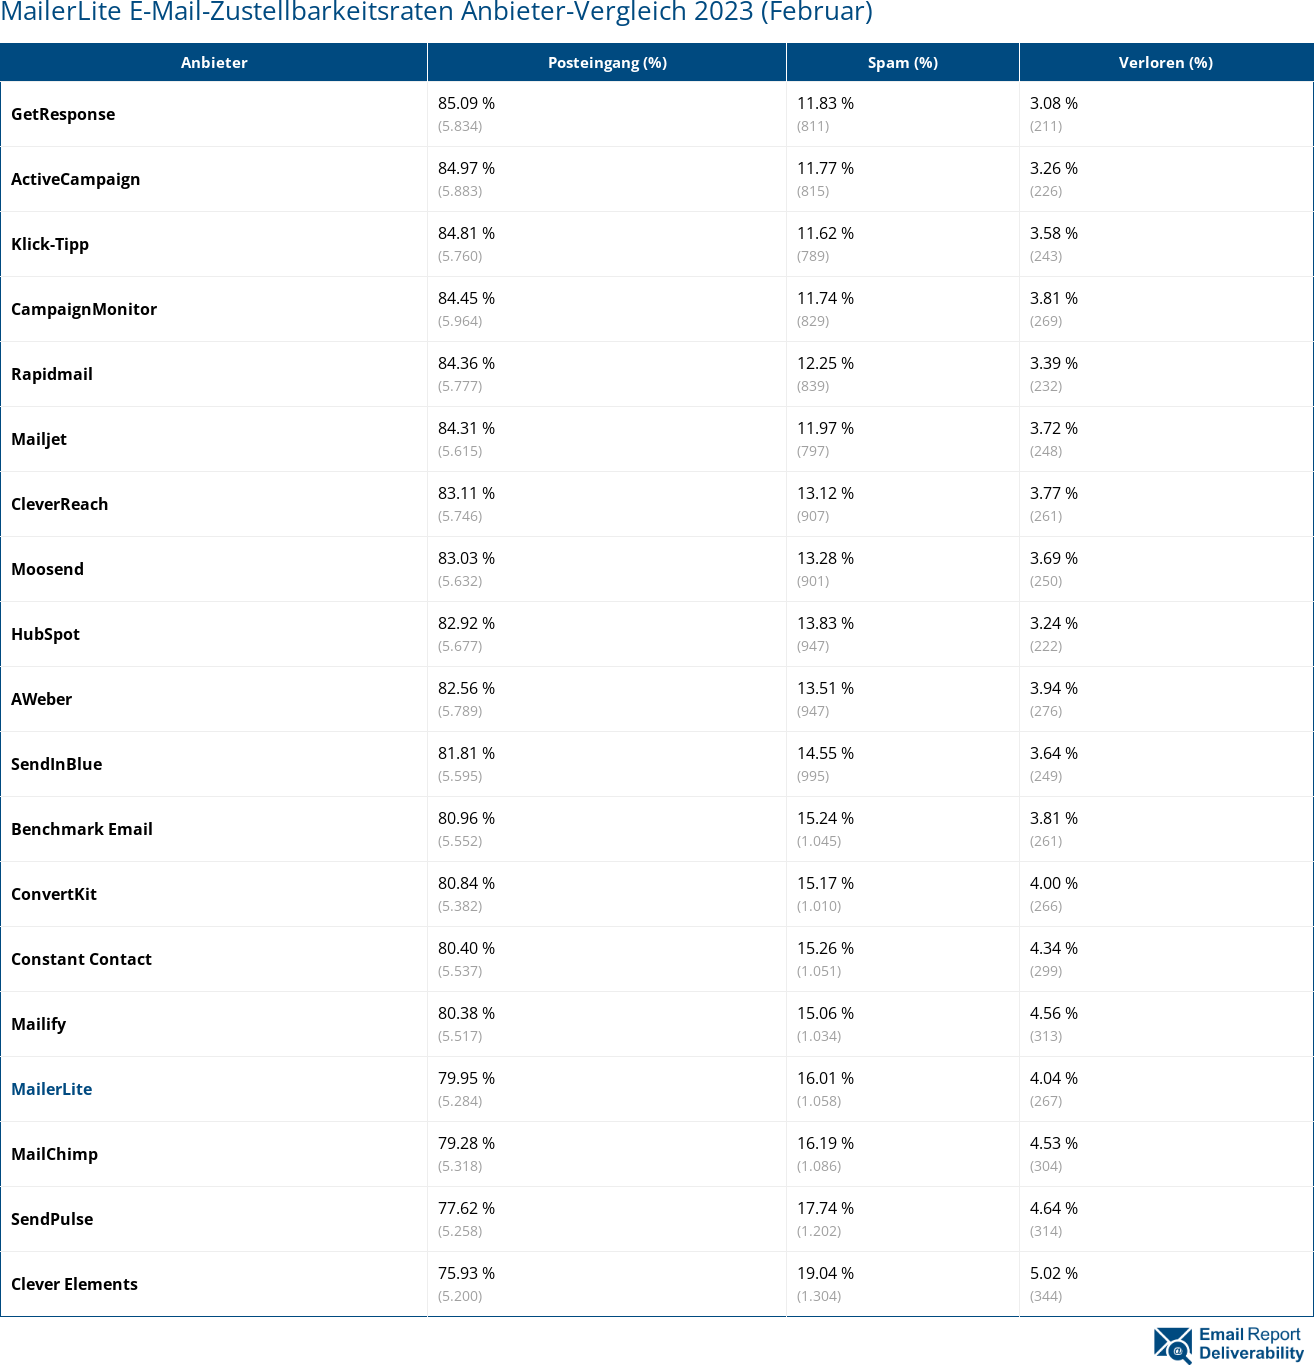 MailerLite E-Mail-Zustellbarkeitsraten Anbieter-Vergleich 2023 (Februar)